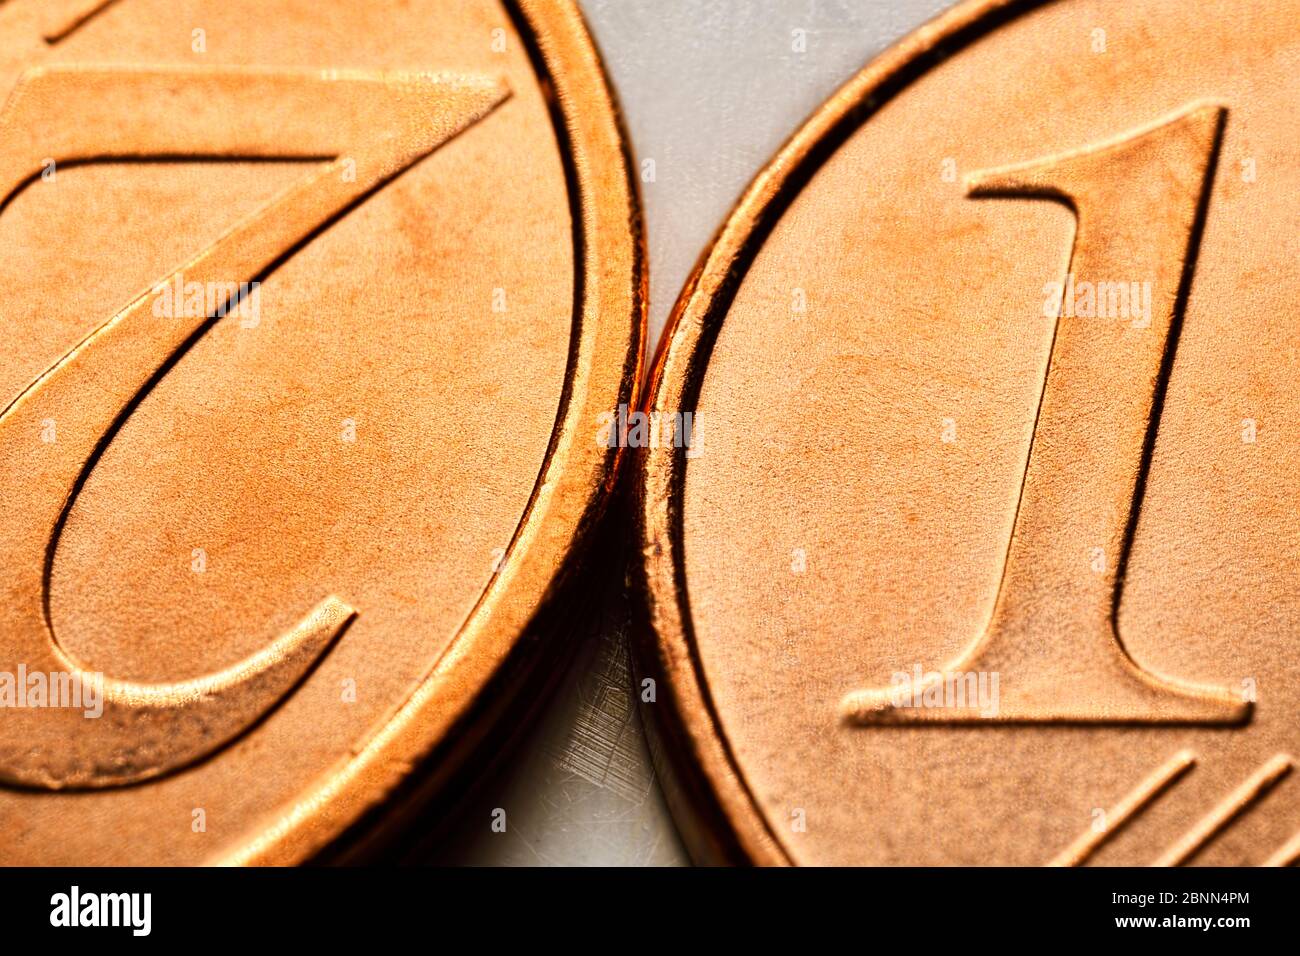 Primo piano di monete centesimi, foto simbolica per la prevista abolizione di monete da 1 e 2 cent Foto Stock